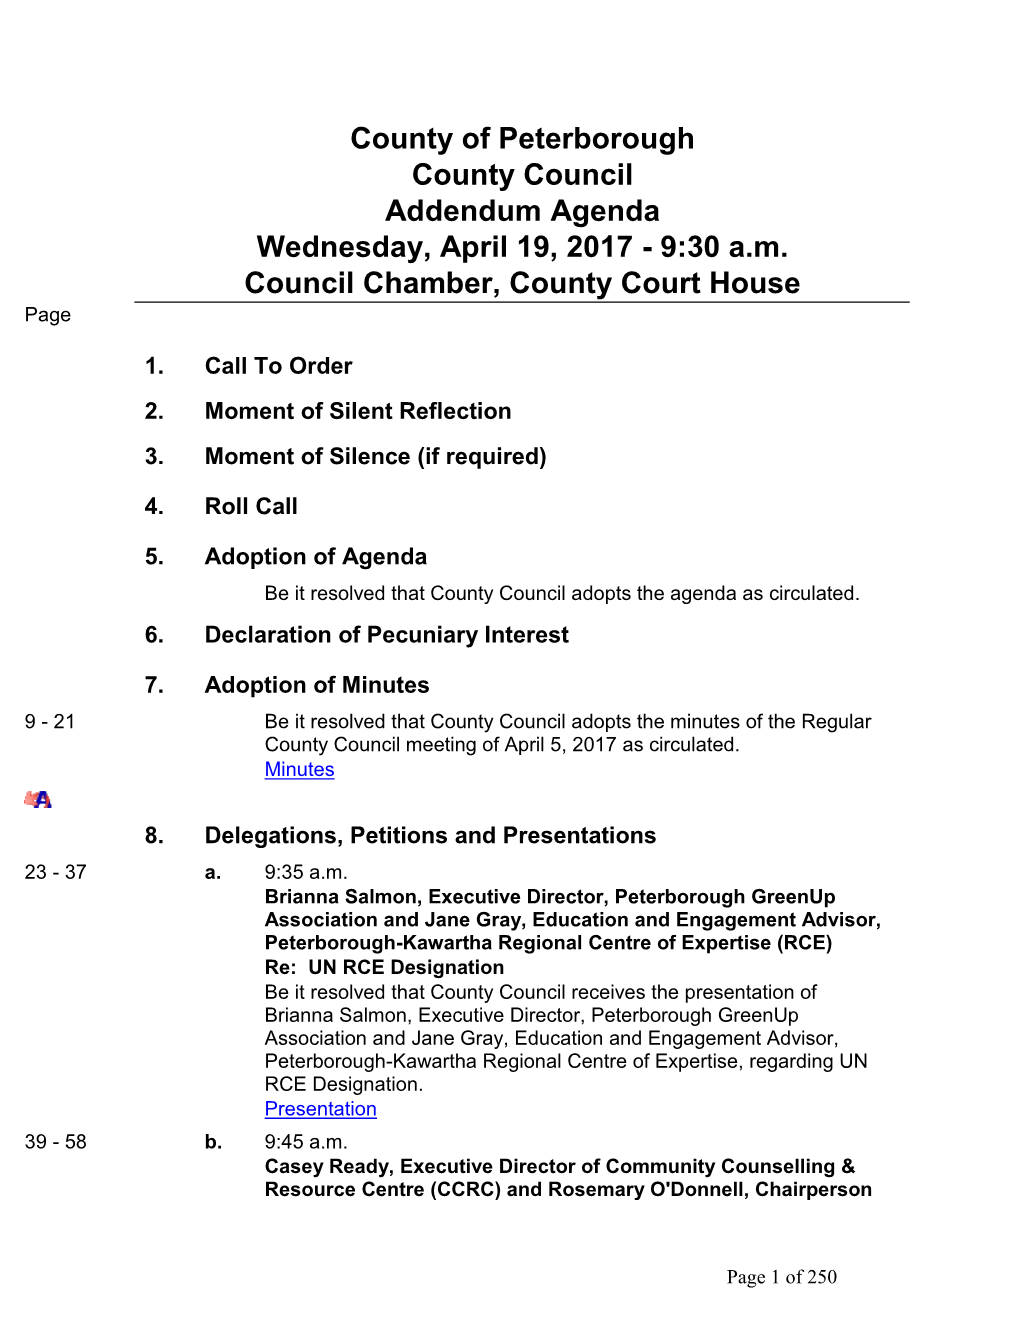 County Council Addendum Agenda Wednesday, April 19, 2017 - 9:30 A.M